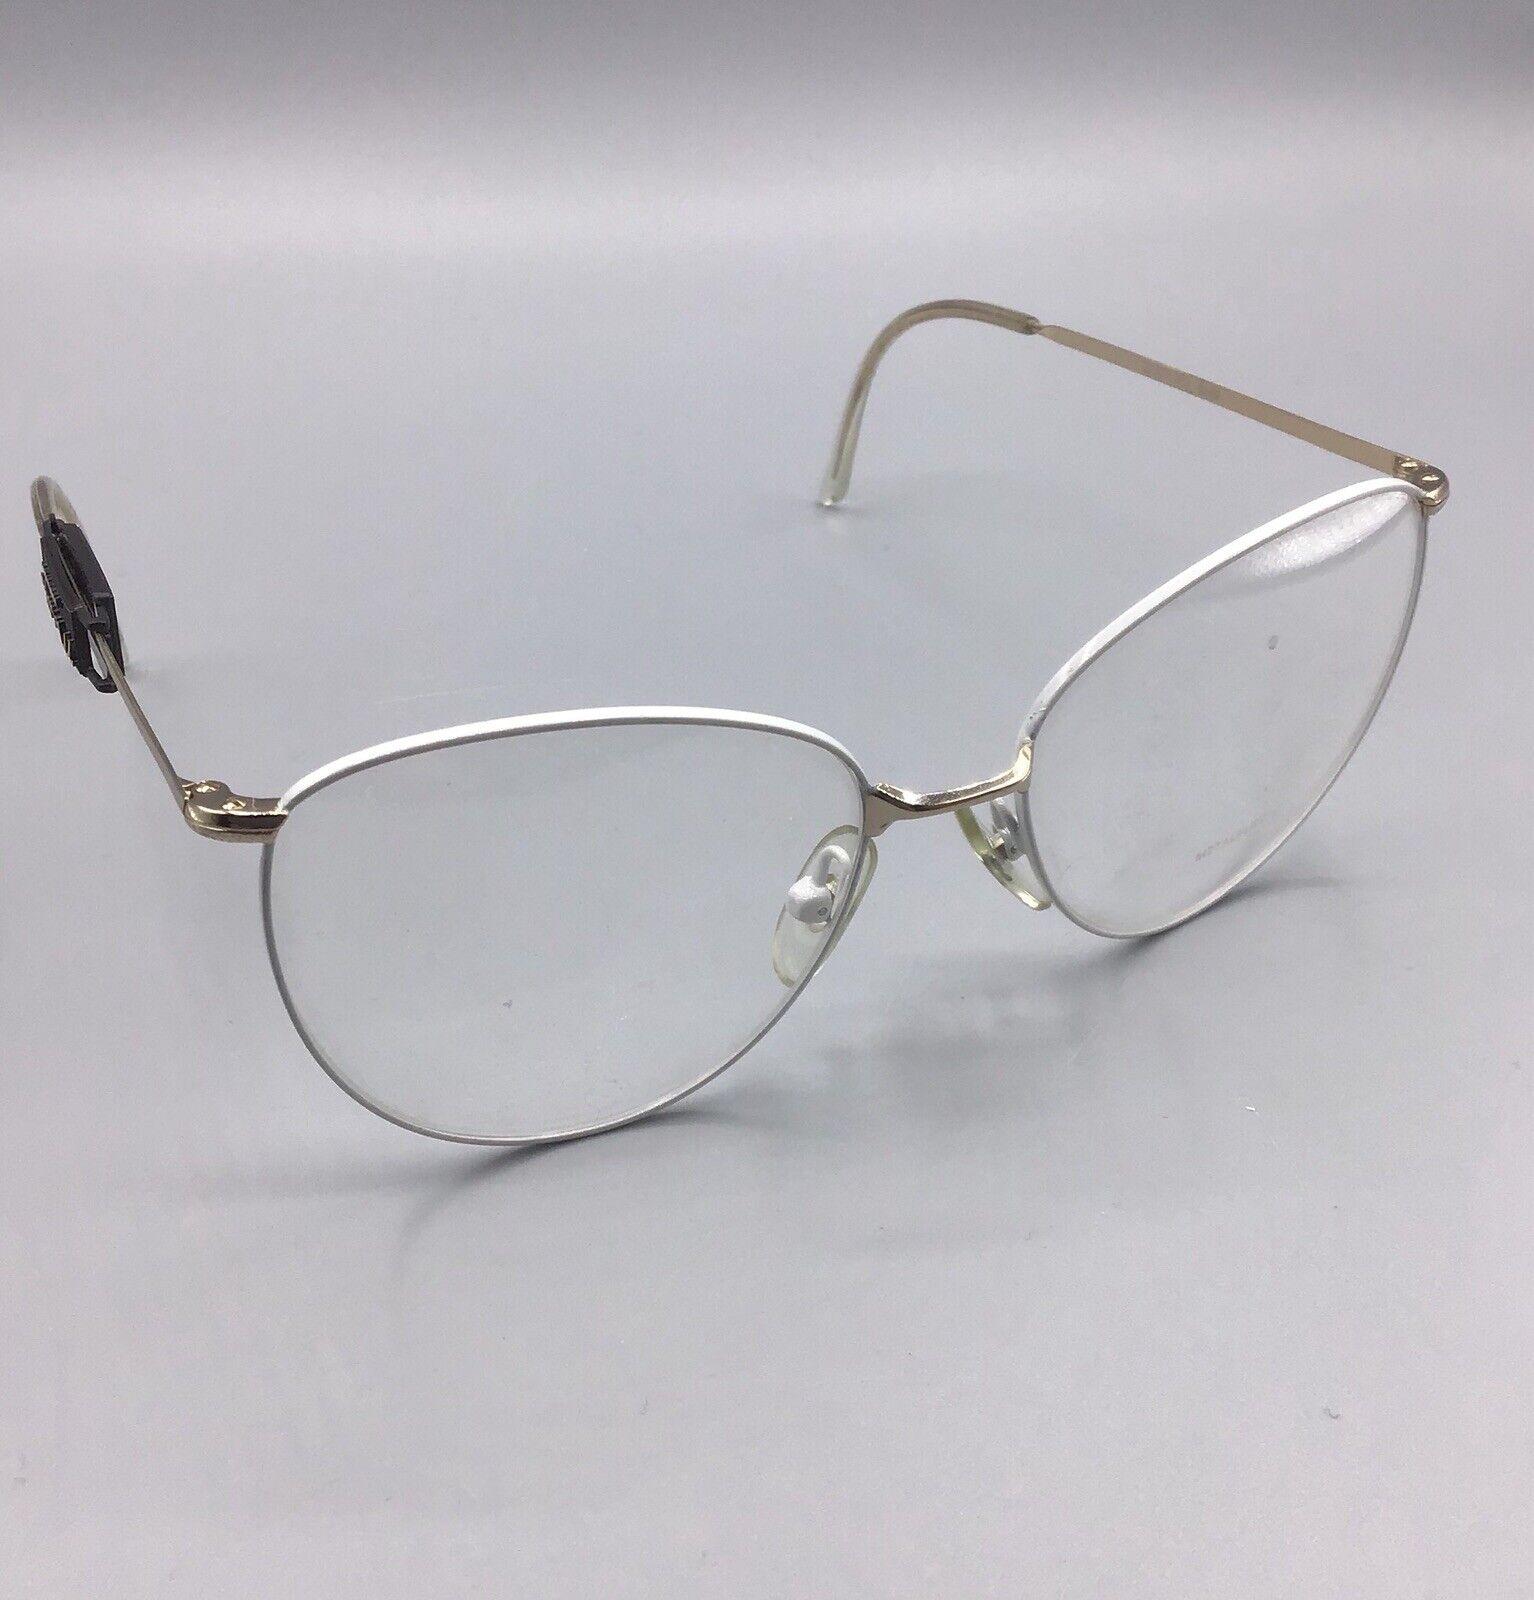 metalflex dora bianco white occhiale eyewear brillen frame lunettes